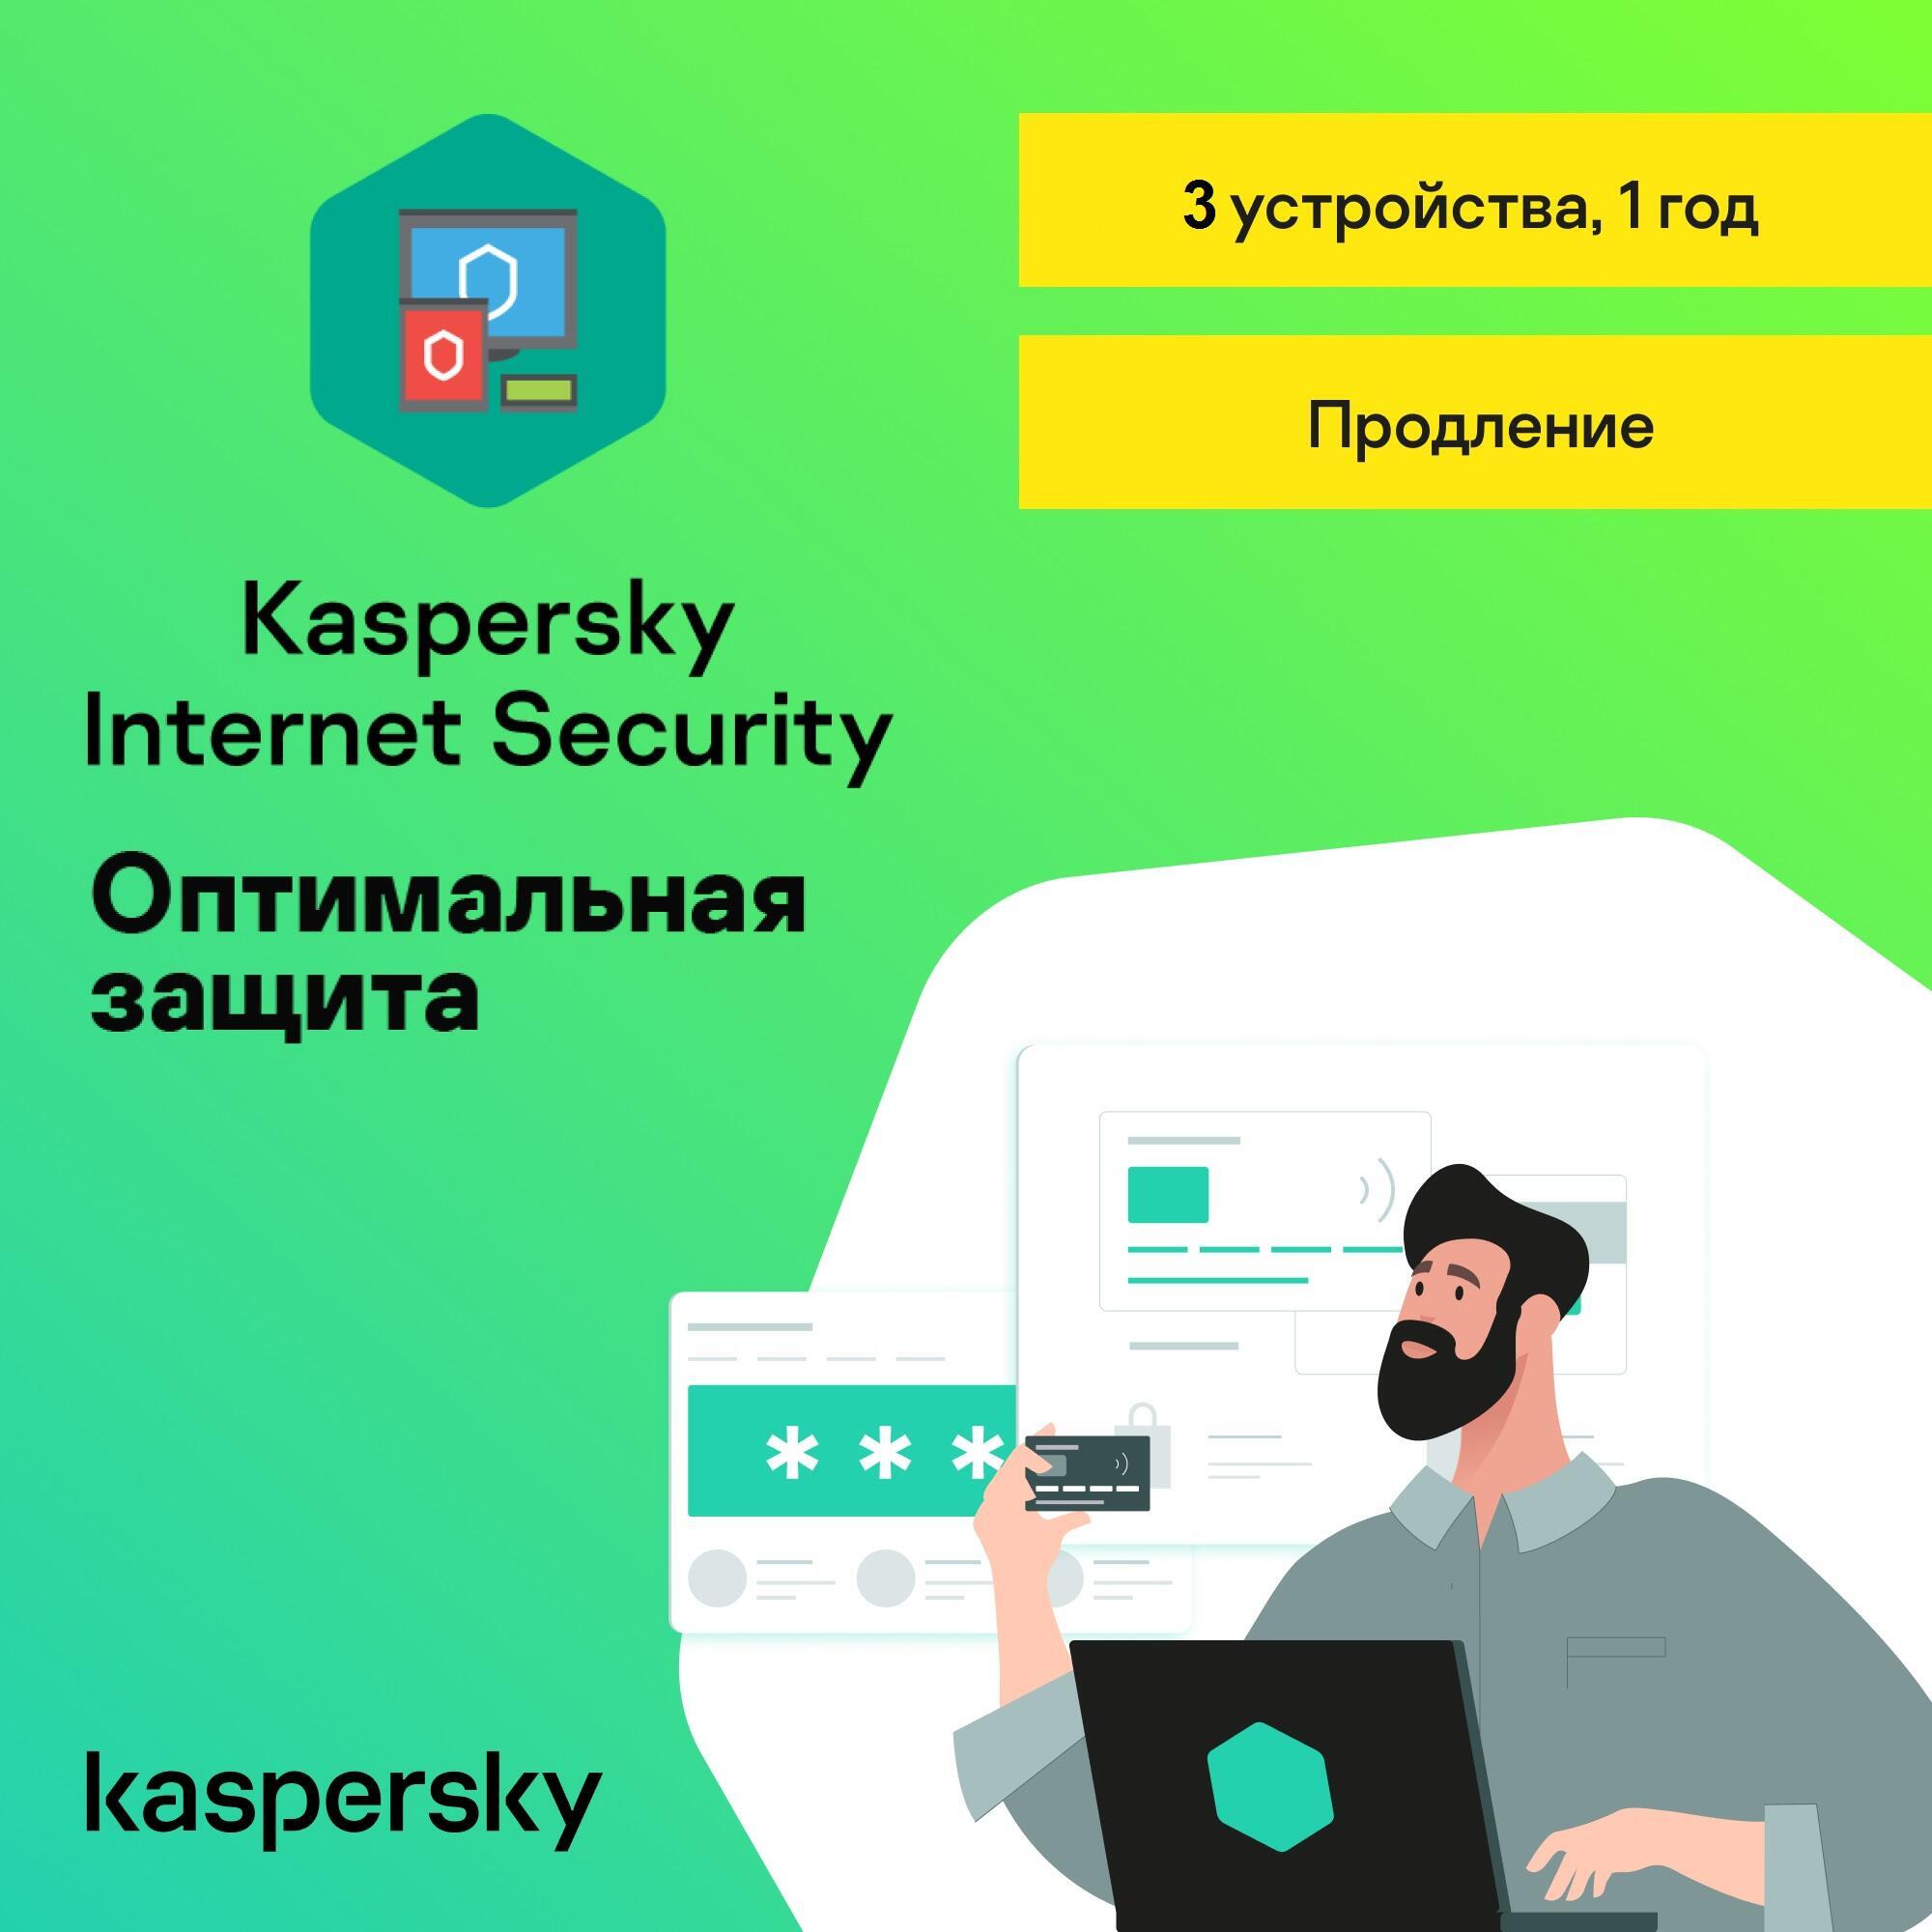 KASPERSKY INTERNET SECURITY  3 dev / 1 year RENEWAL